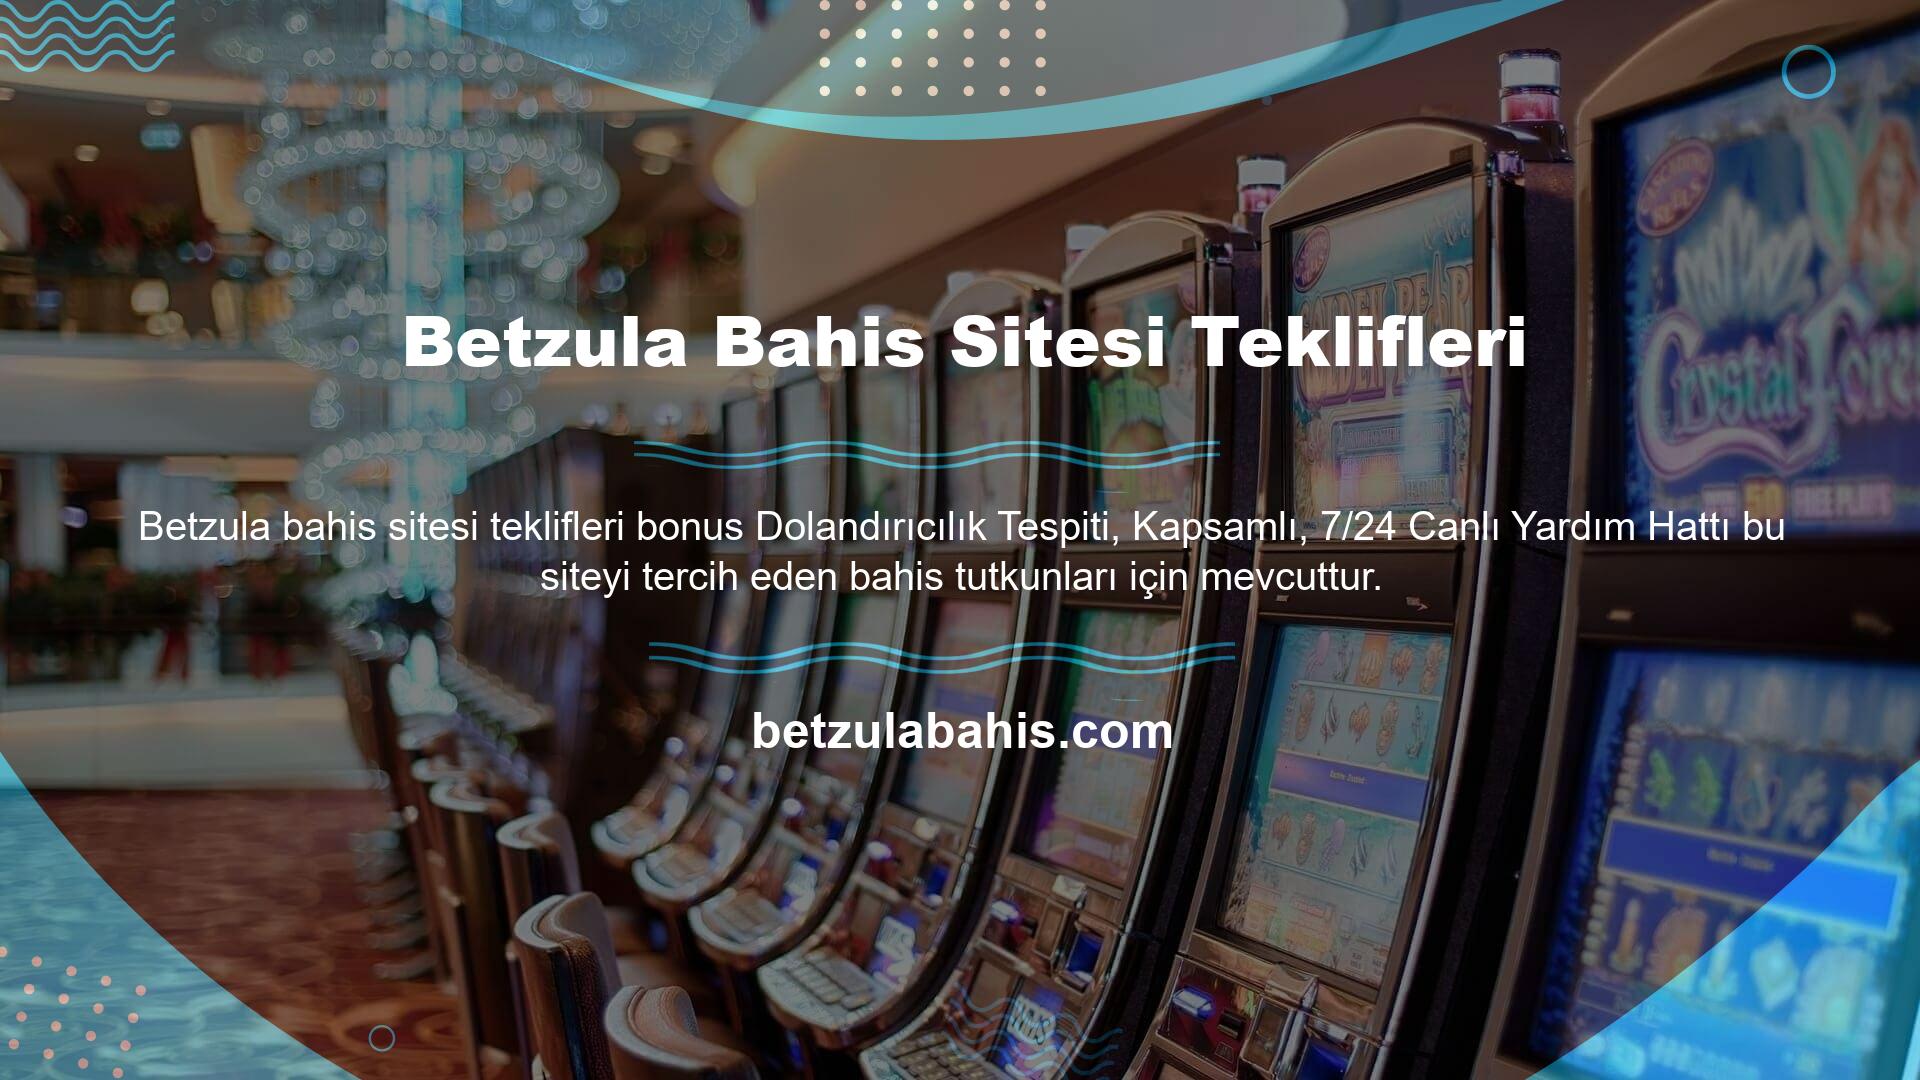 Oyuncular, Betzula oyun sitesinin genç ve tutkulu yöneticileriyle sitenin e-posta adresini ve diğer interaktif teknolojileri kullanarak iletişime geçebilirler